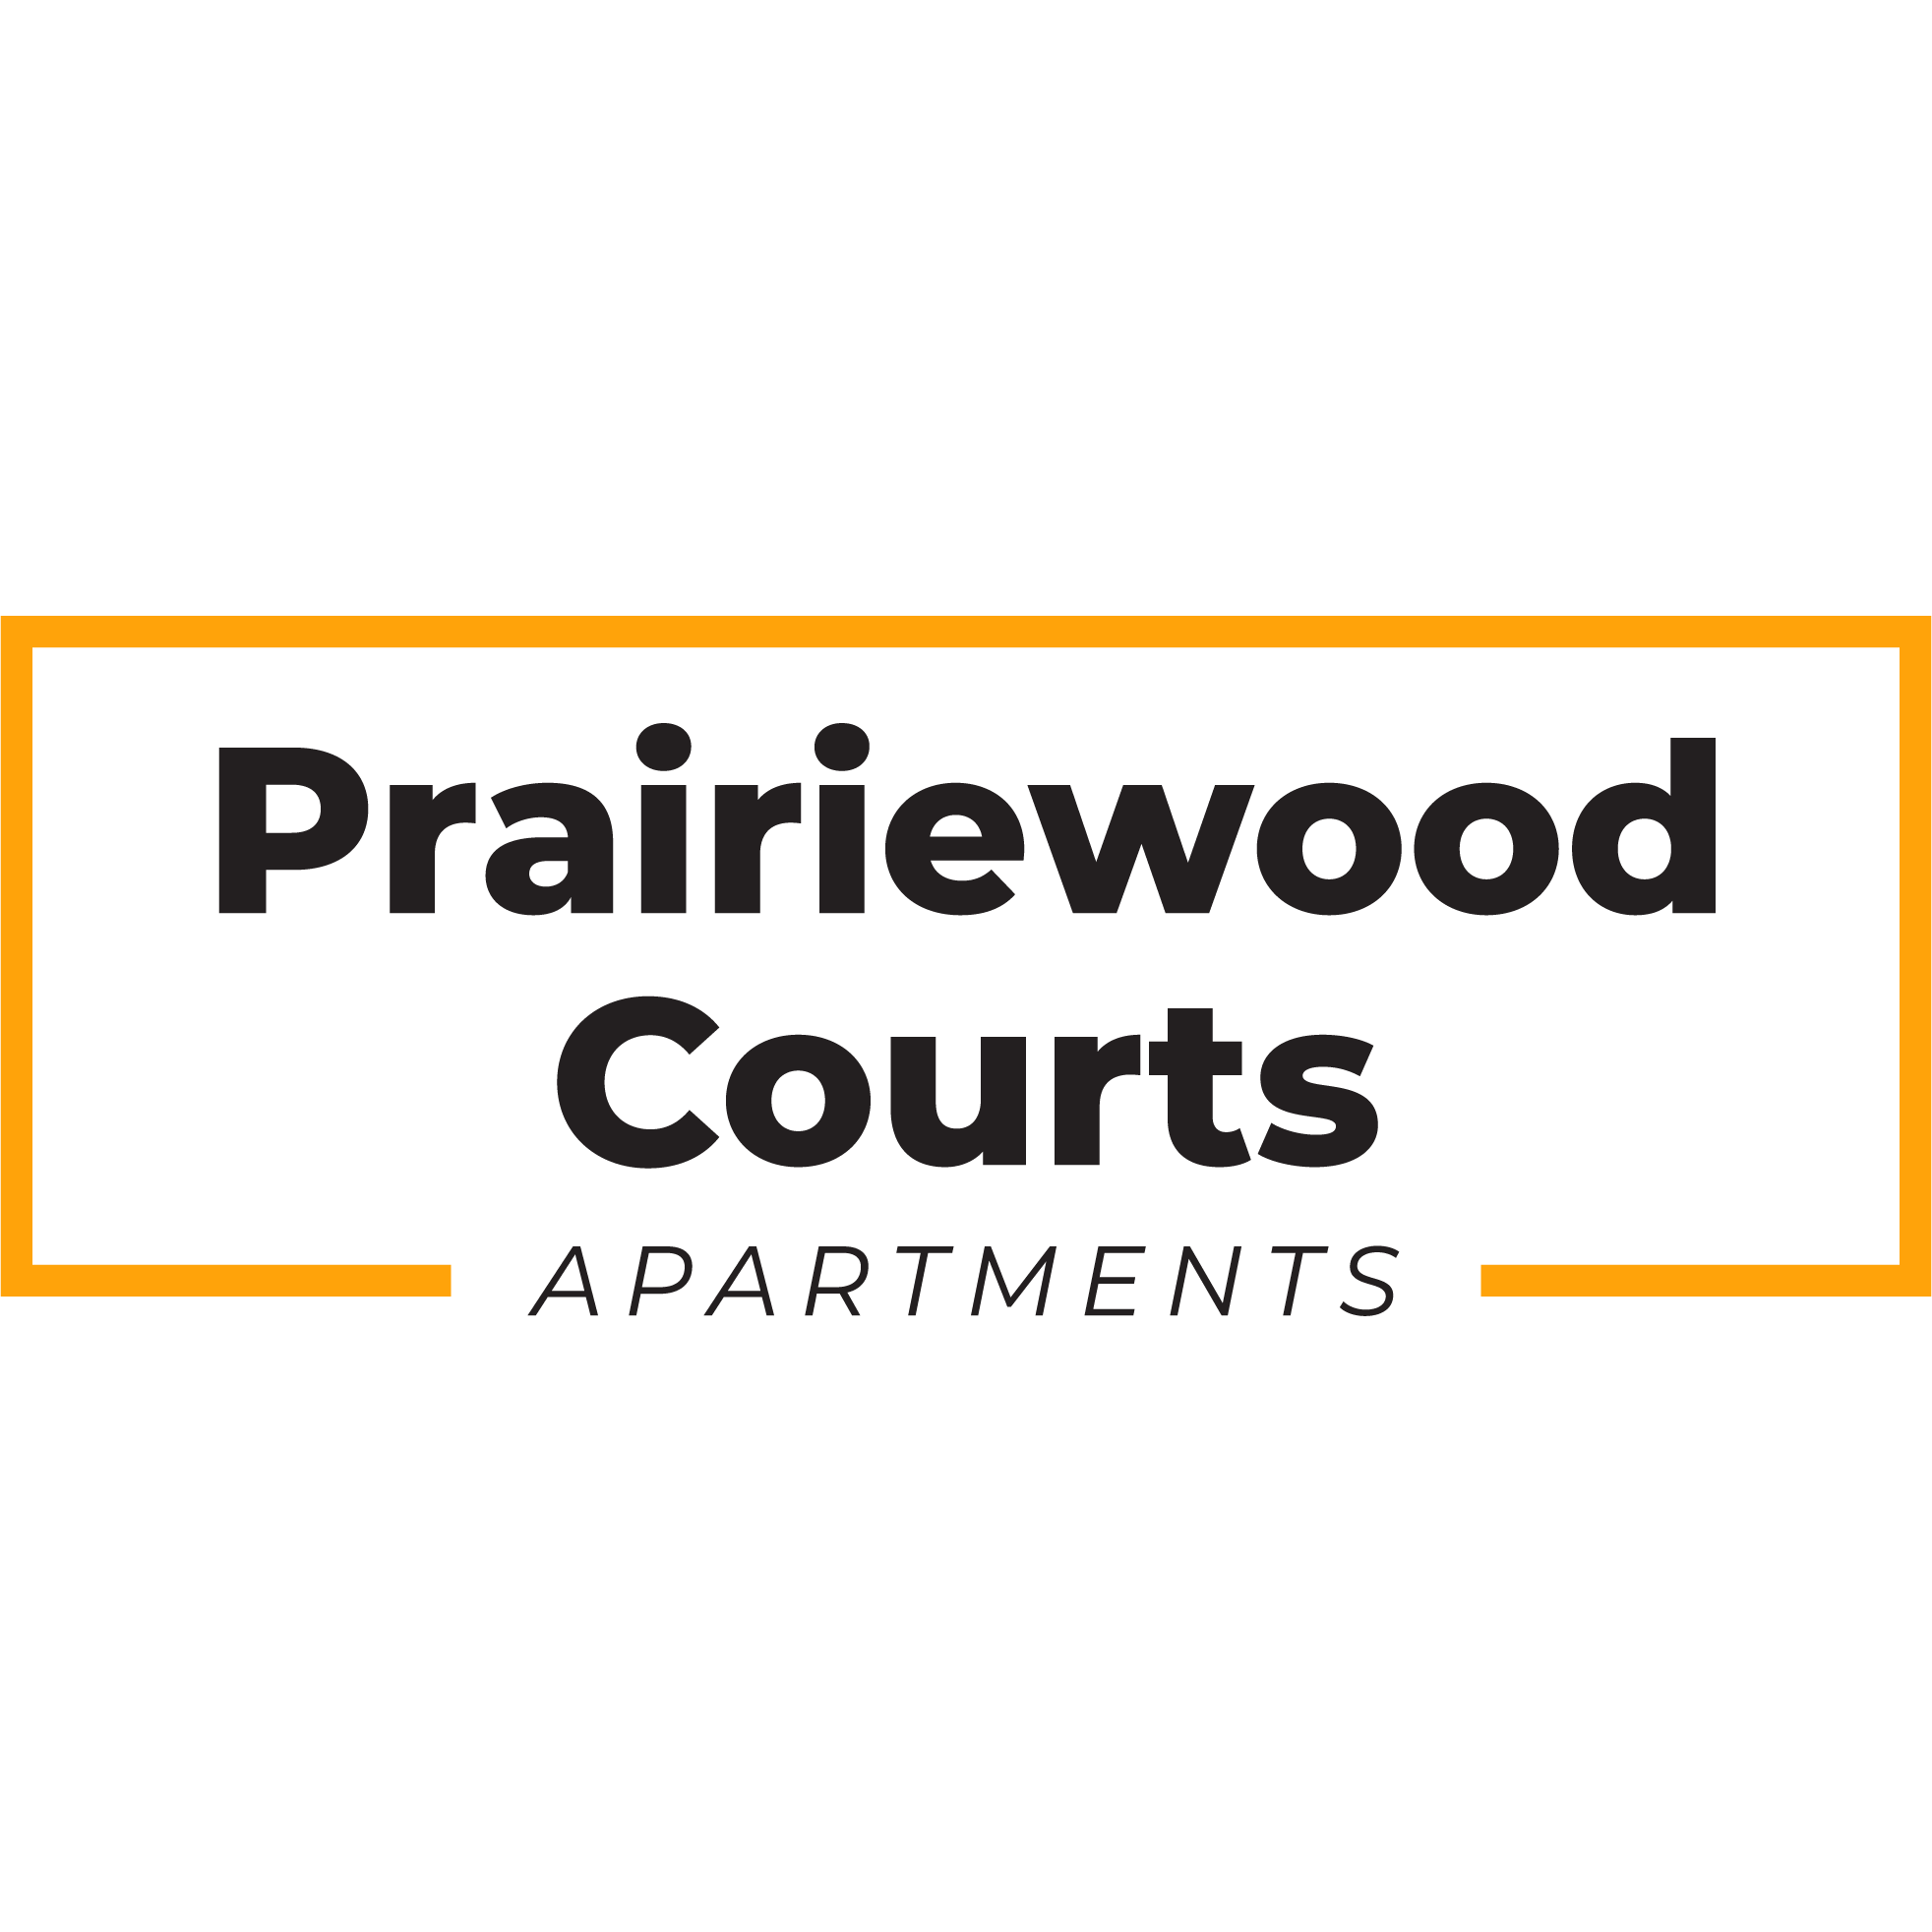 Prairiewood Courts